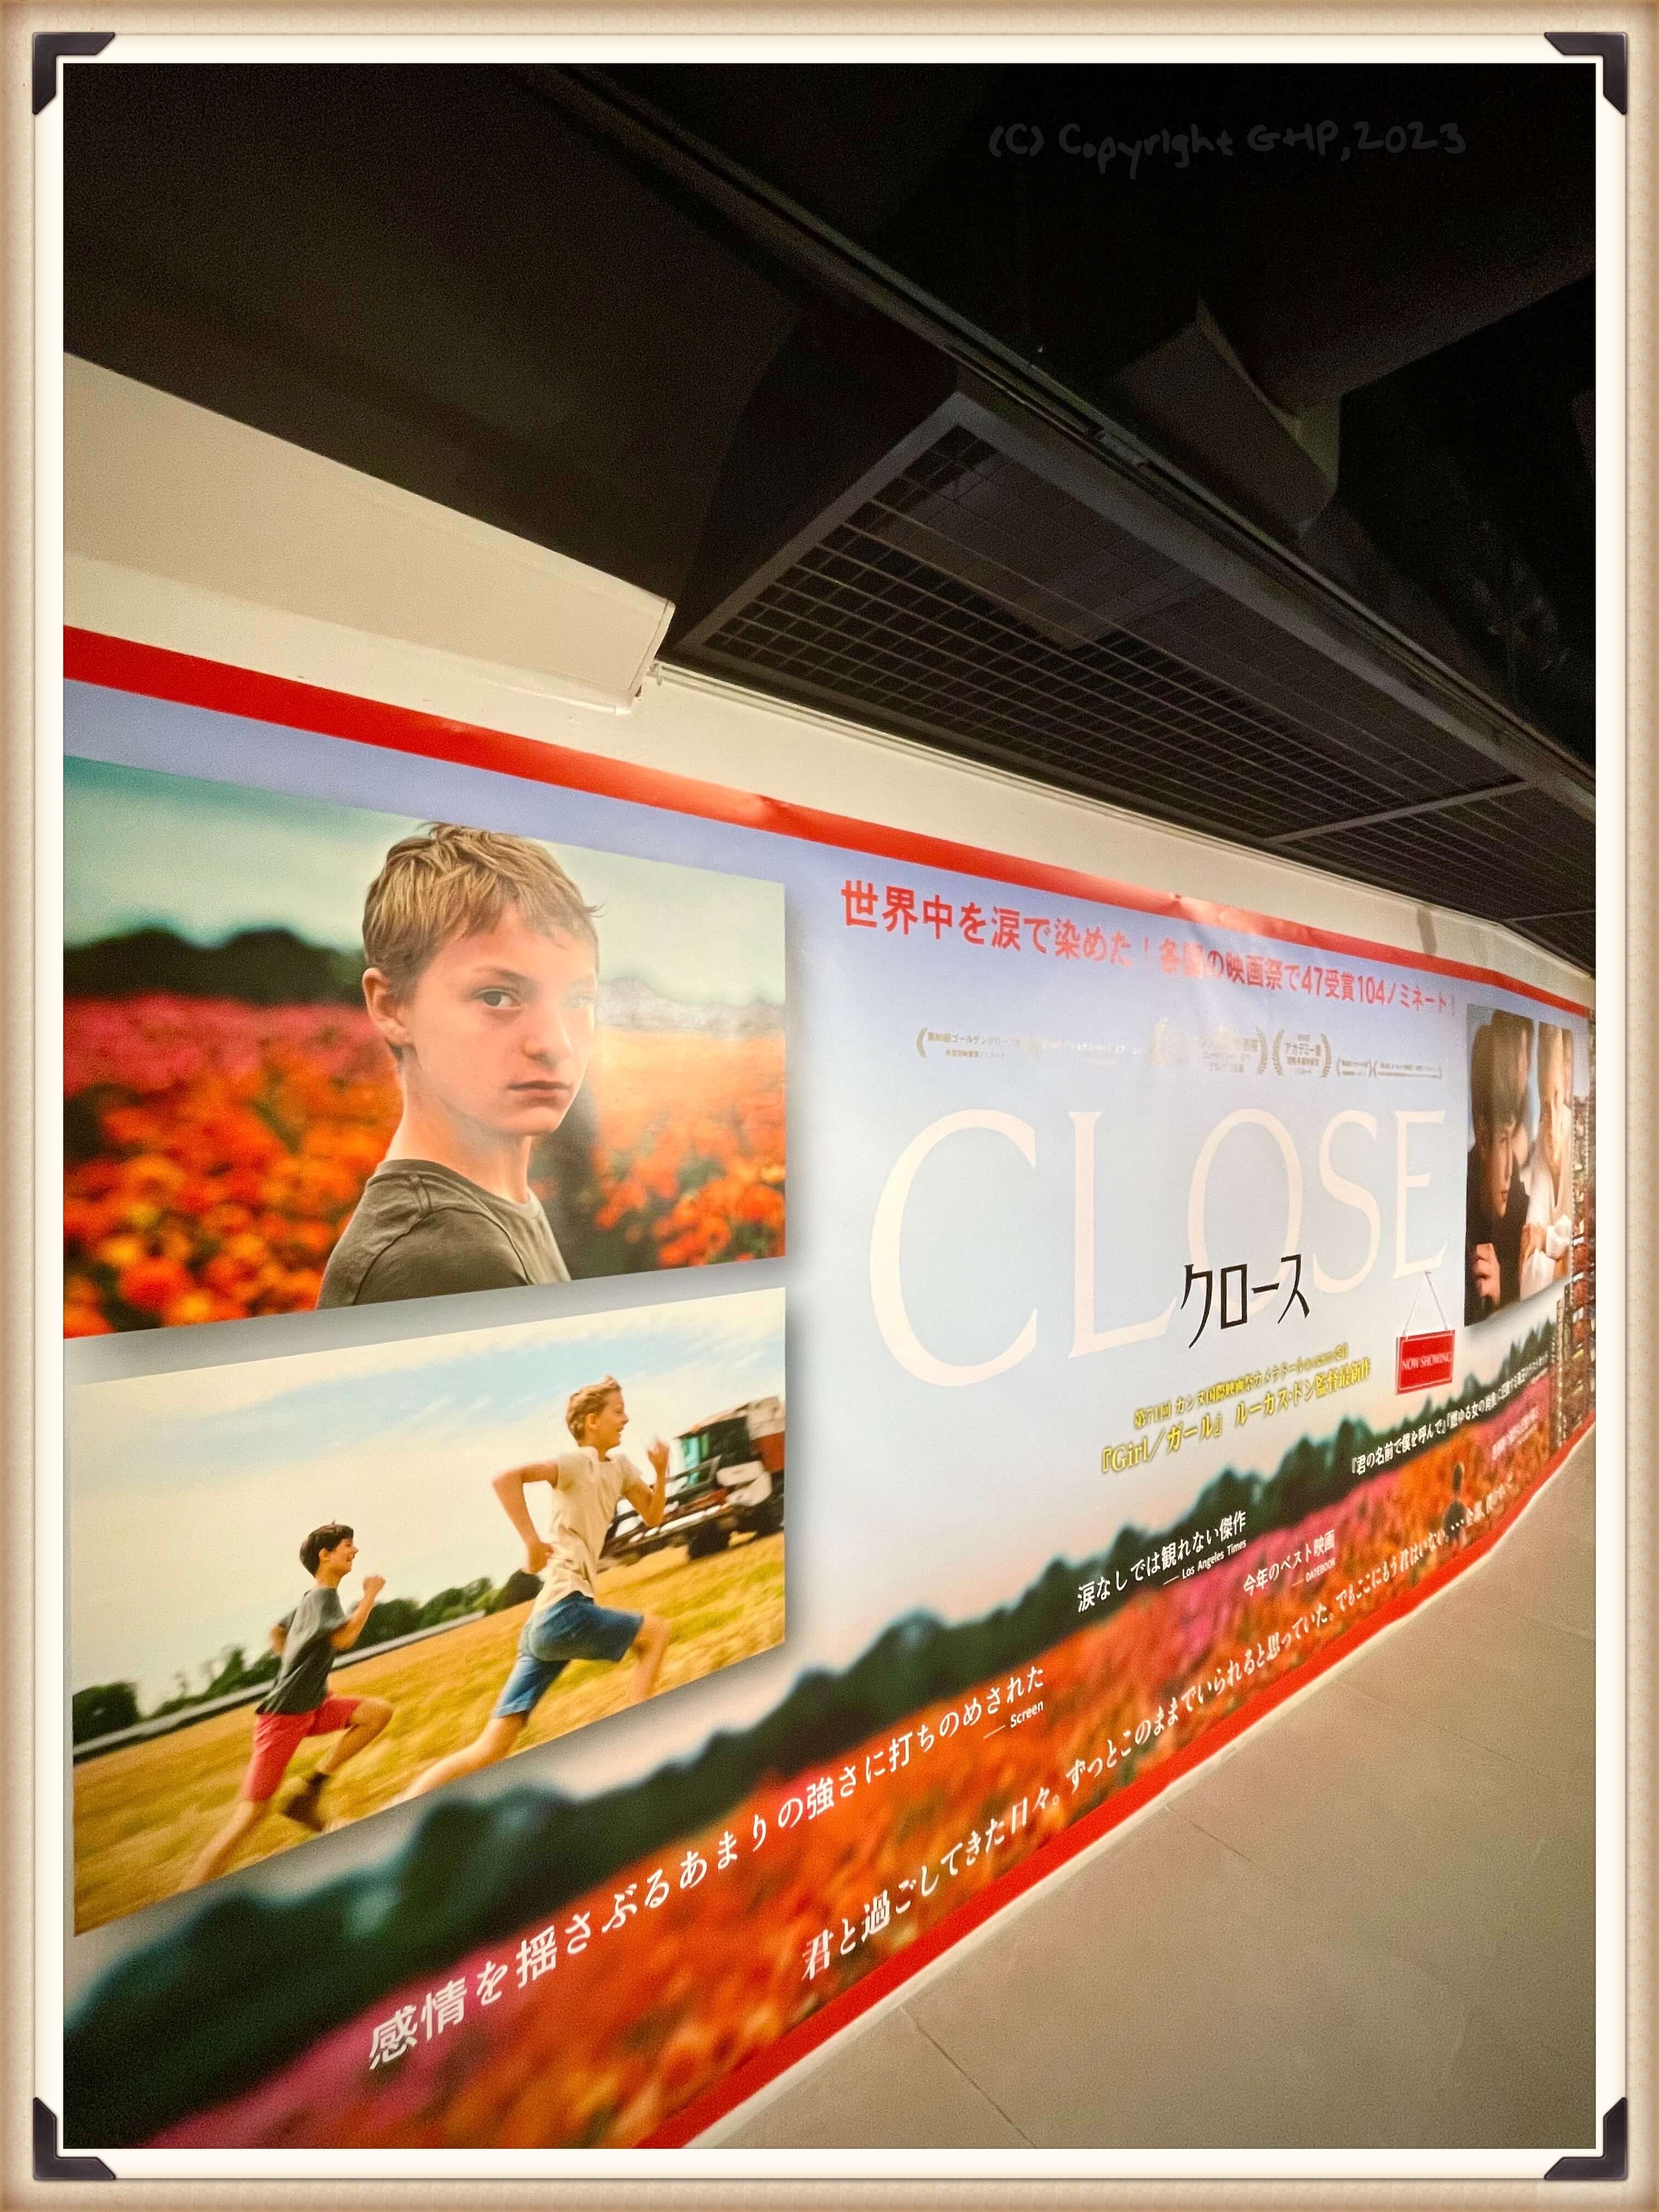 「CLOSE／クロース」のポスター